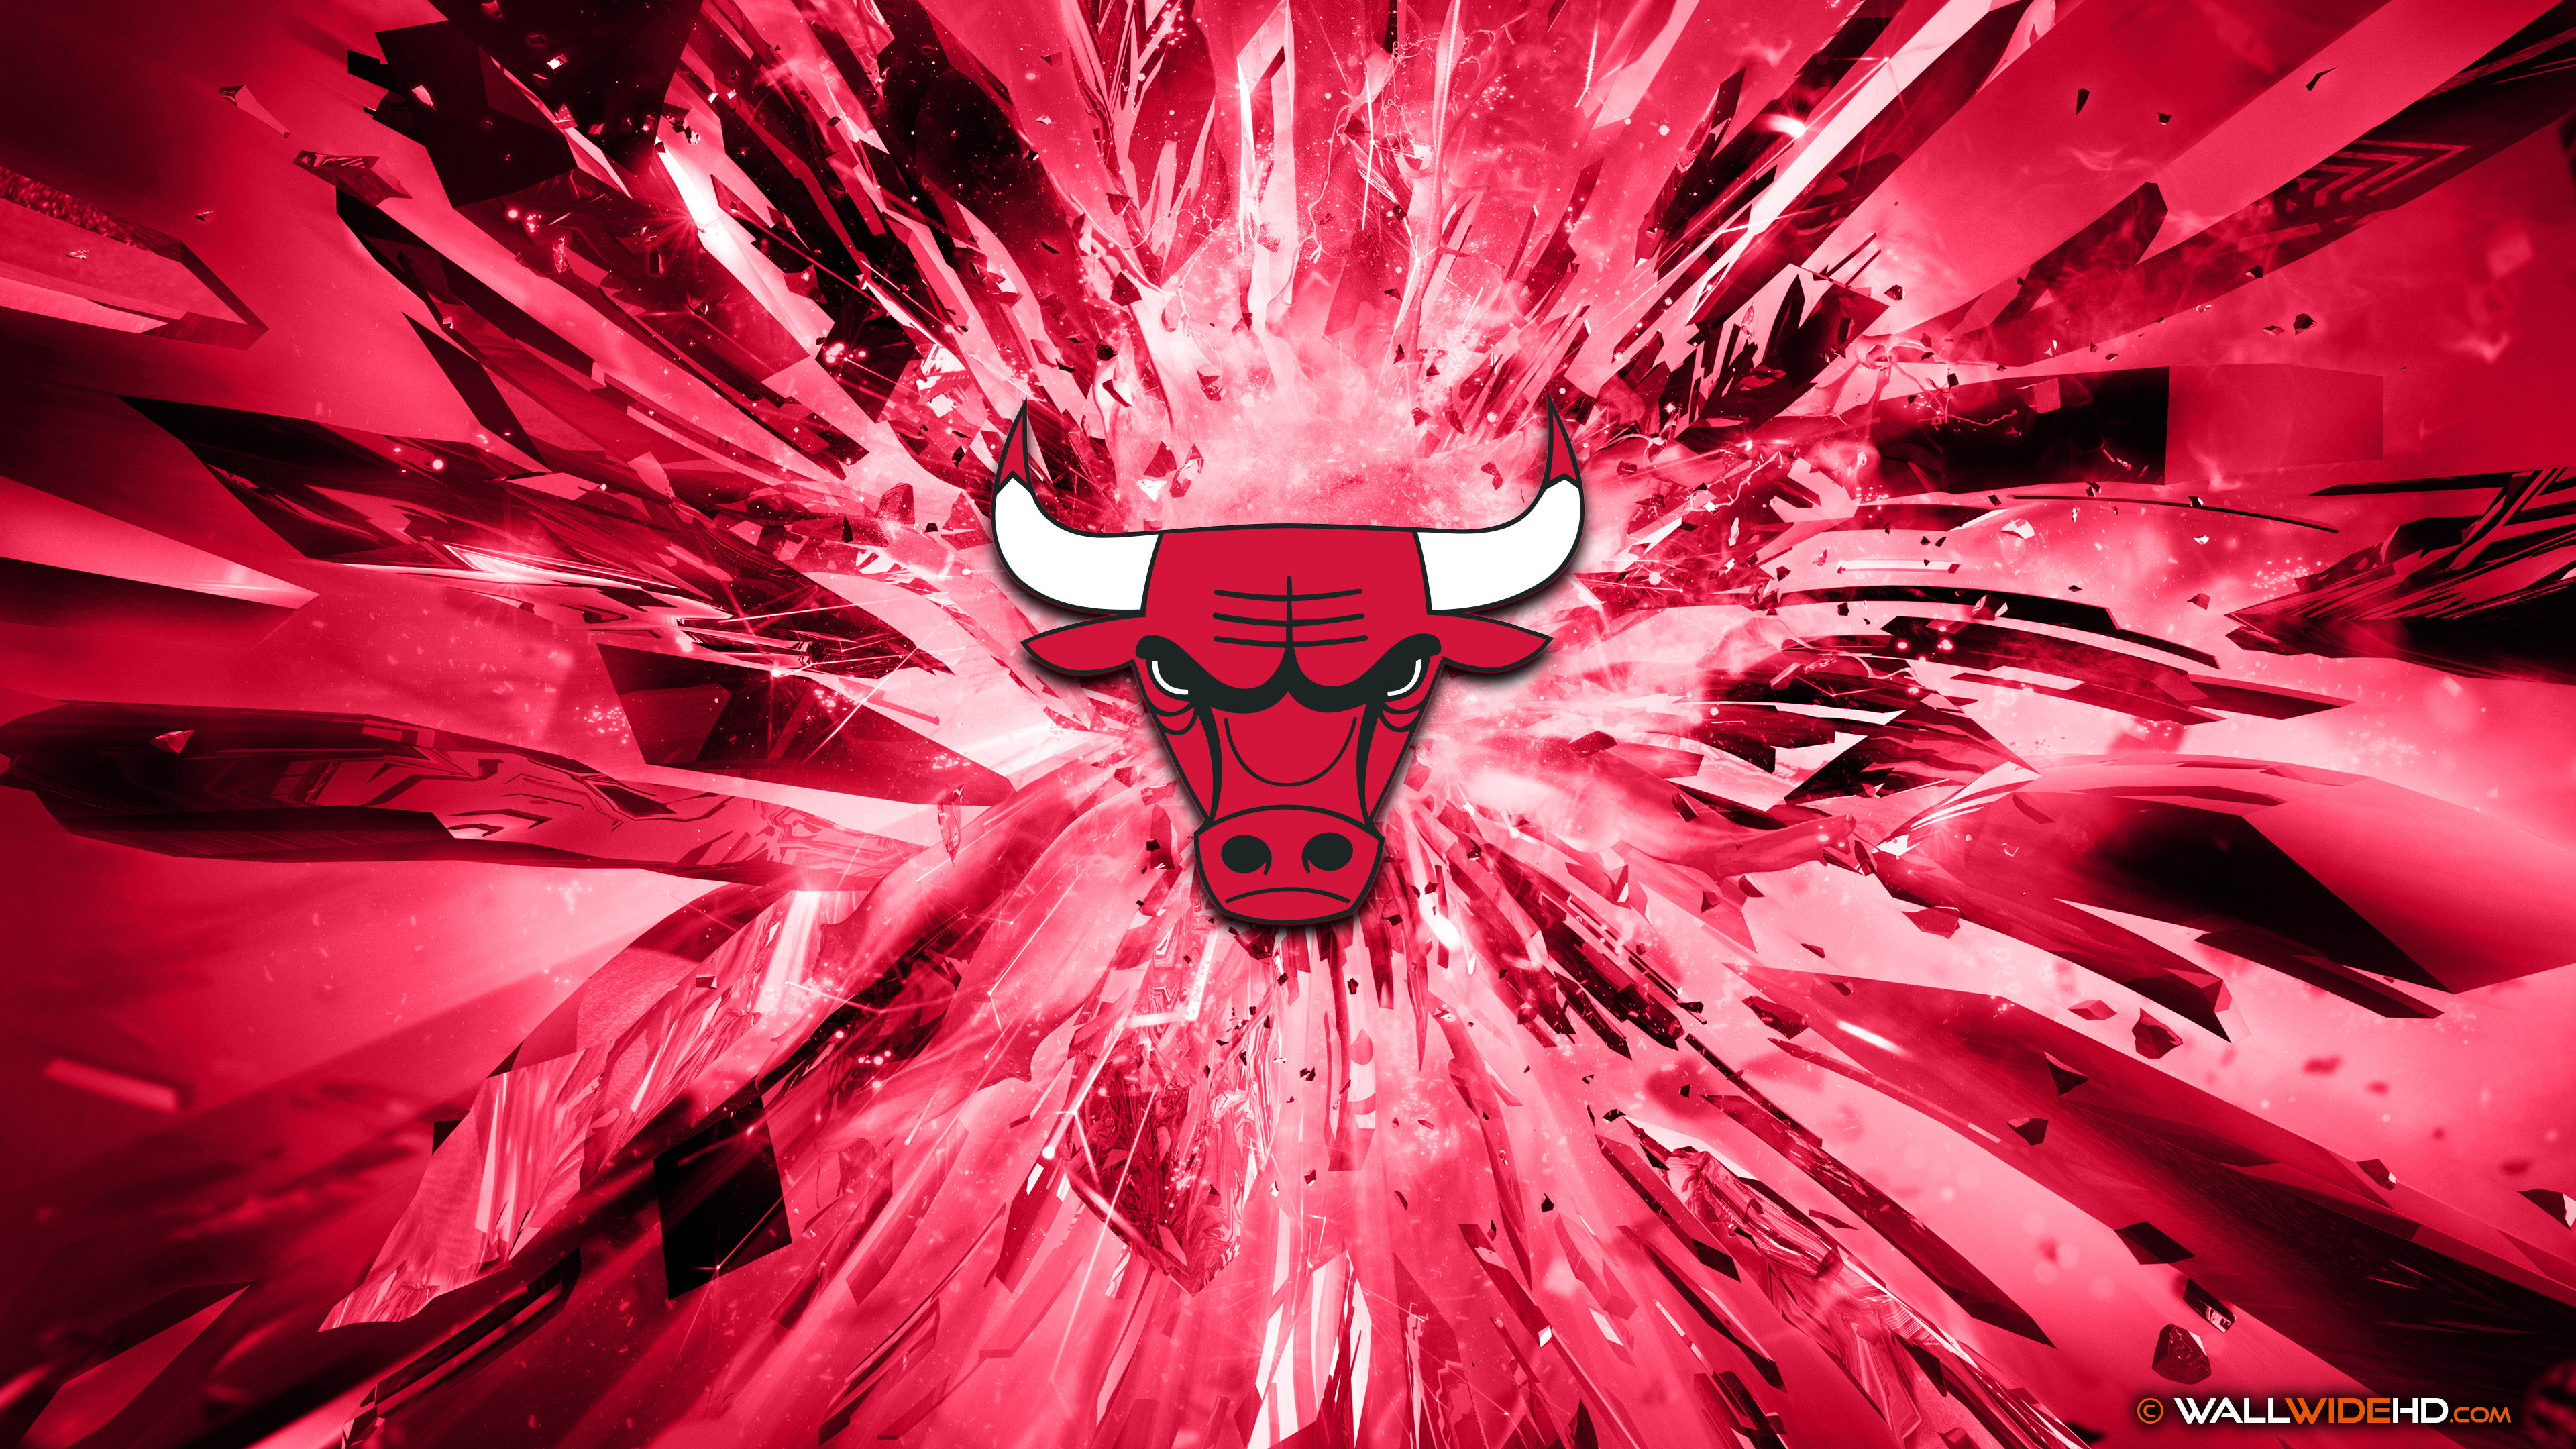 Chicago Bulls 2015 Logo basketball 4K Wallpaper 3840x2160